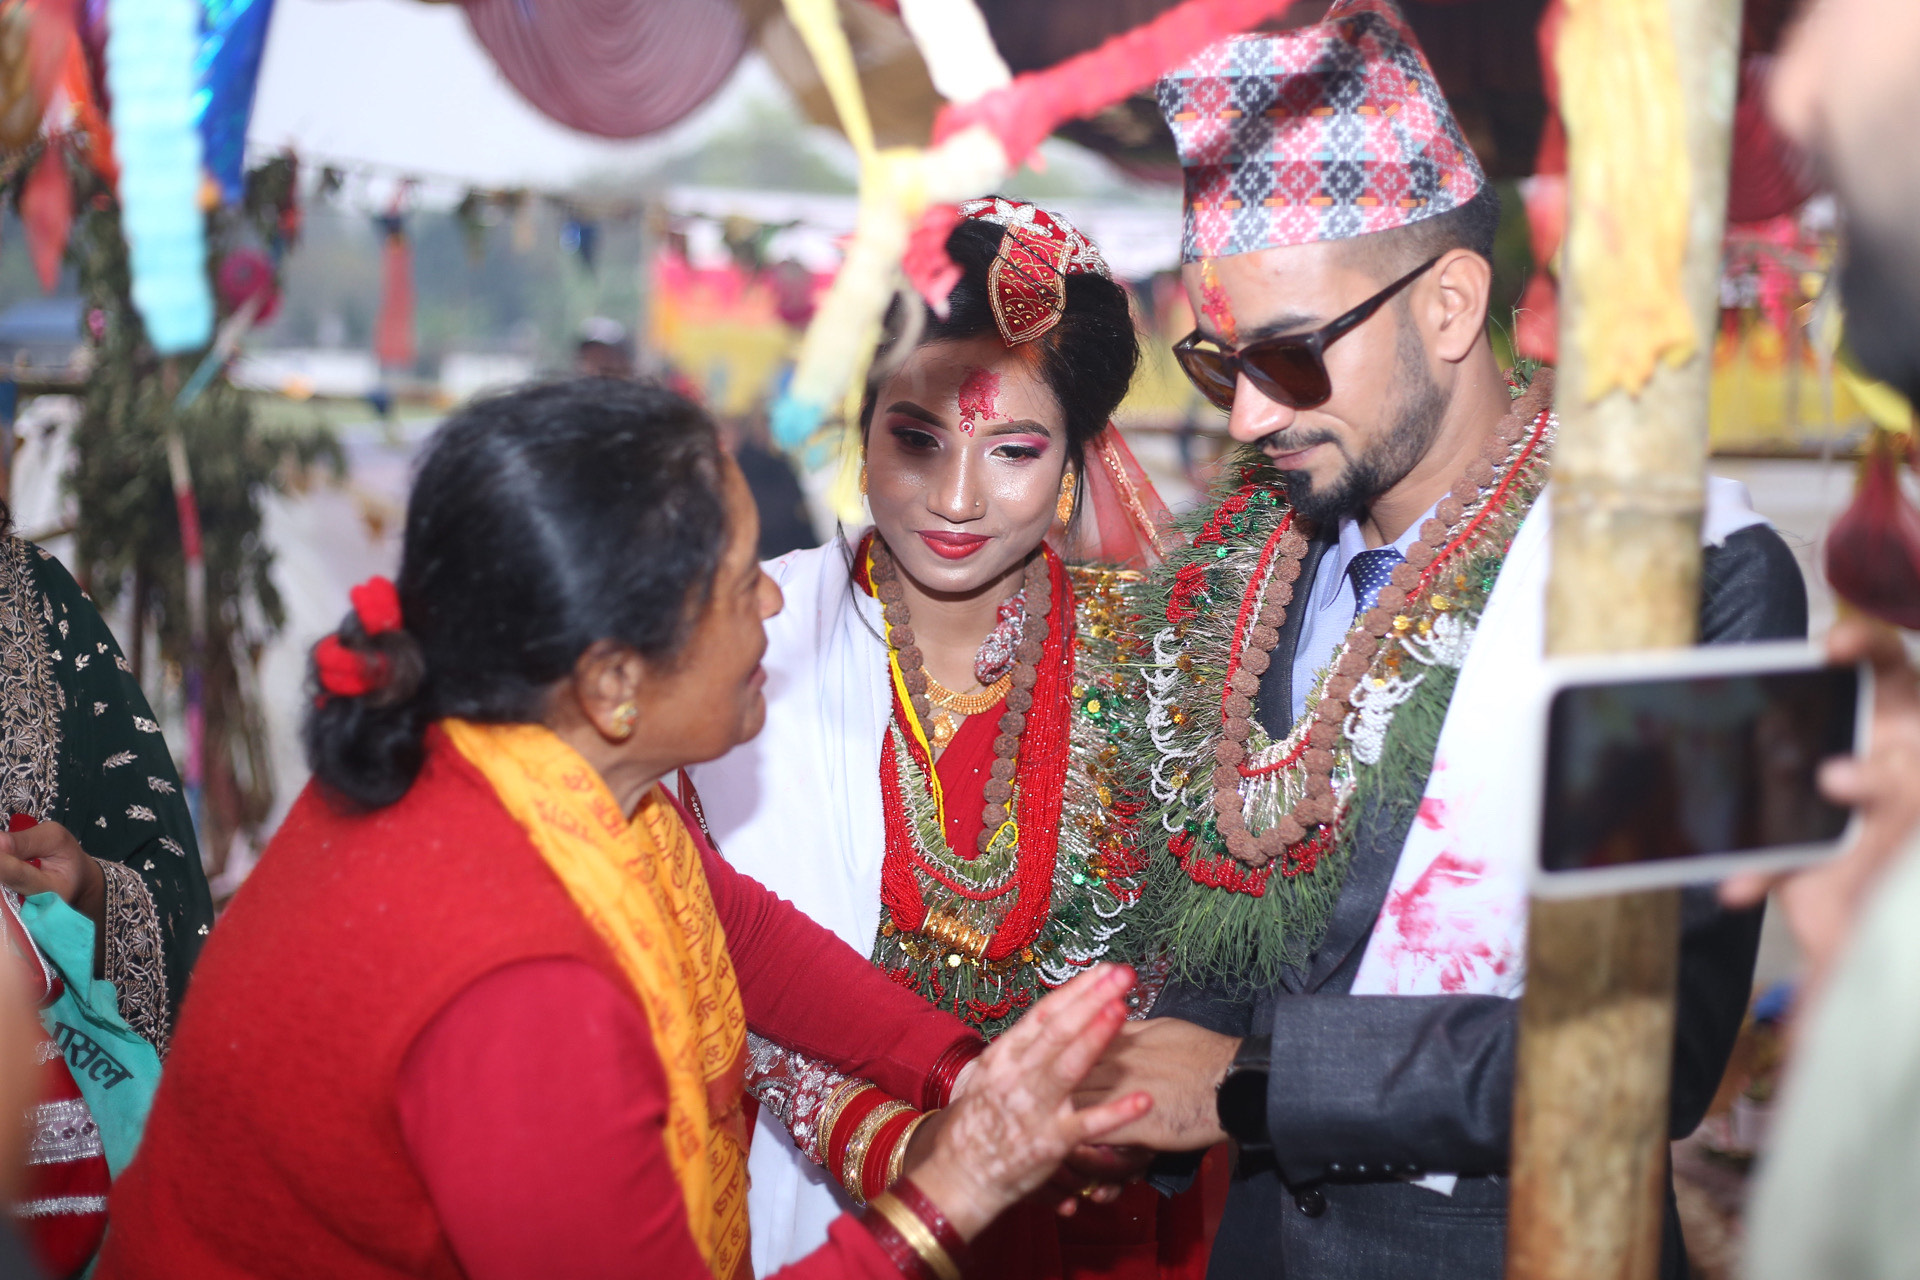 pokhara ashok and maria marriage1678891454.jpeg